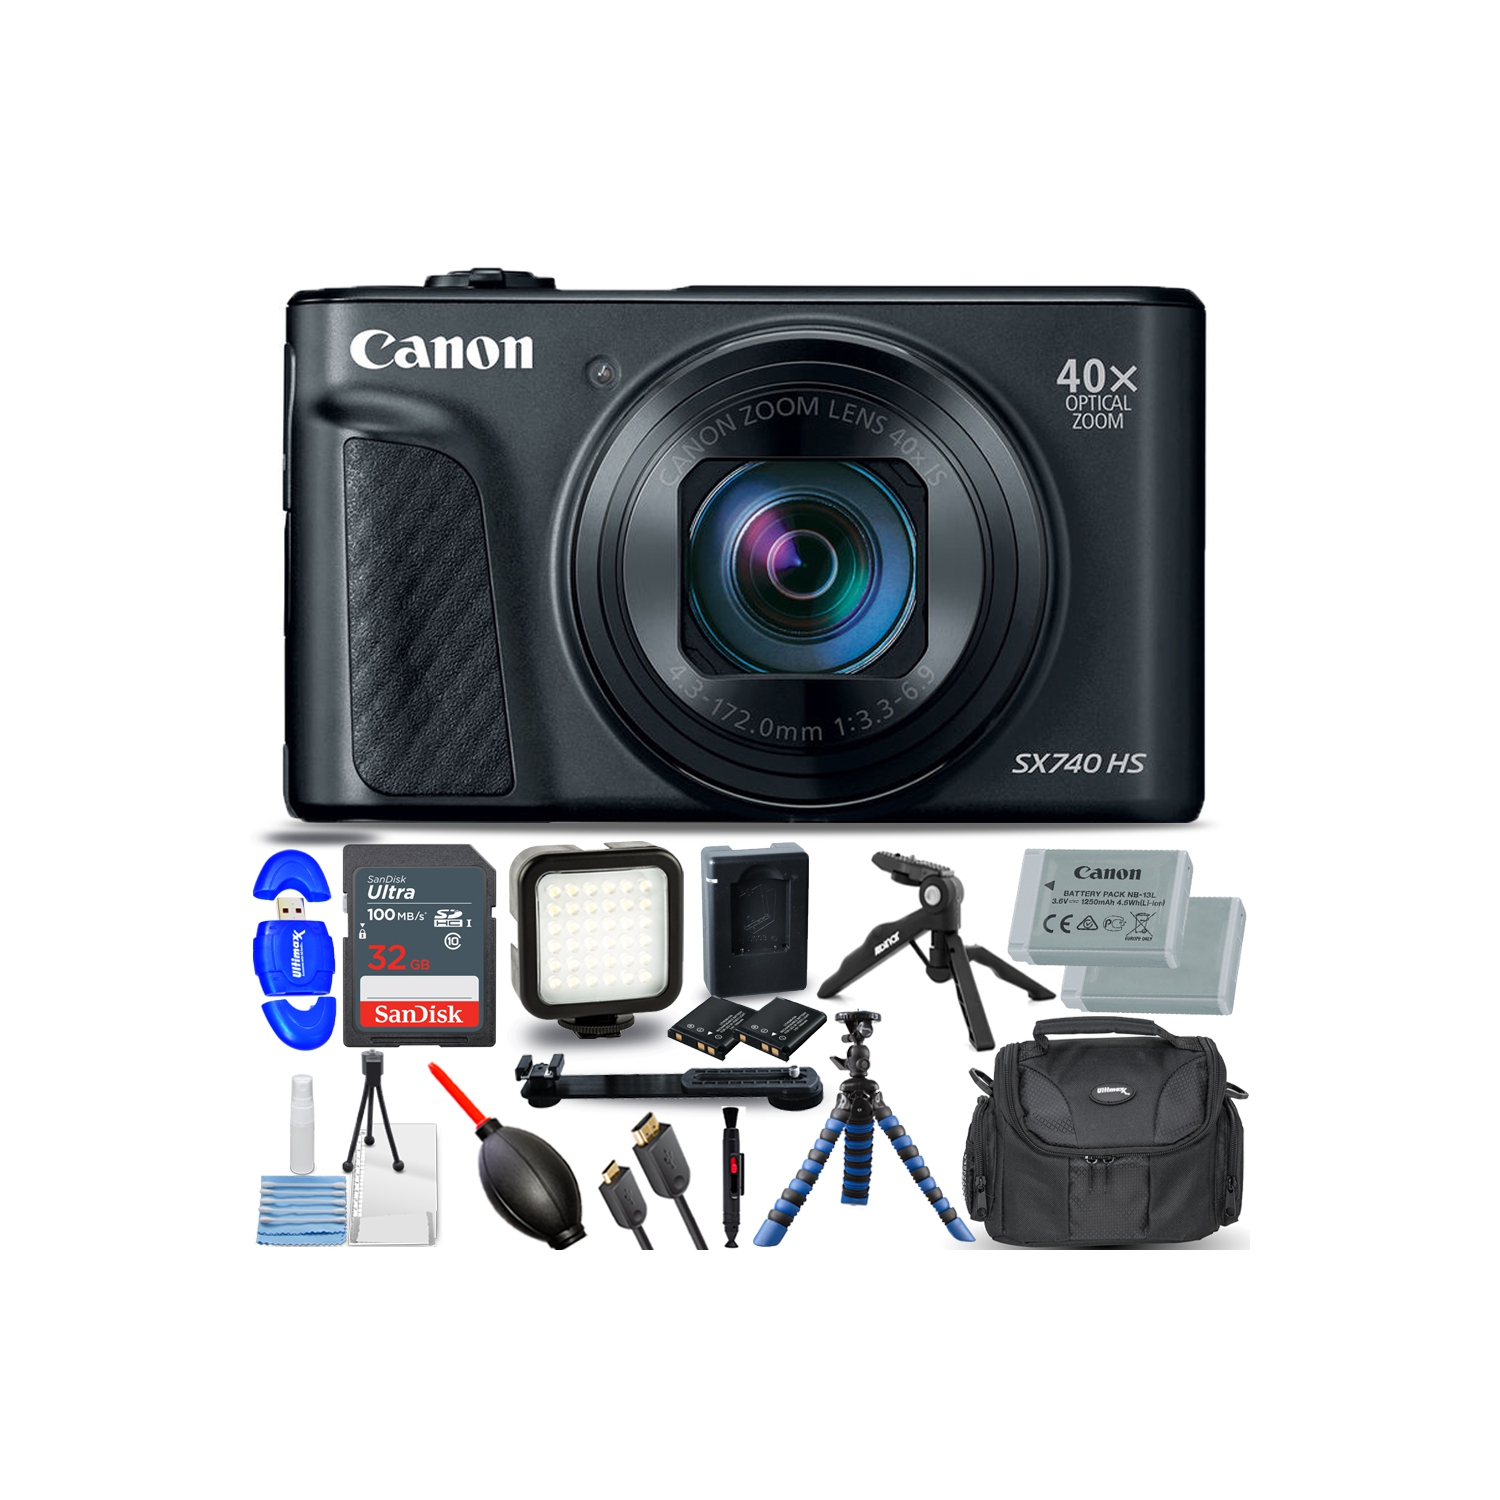 Canon PowerShot SX740 HS Digital Camera (Black) 2955C001 - 12PC Accessory Bundle